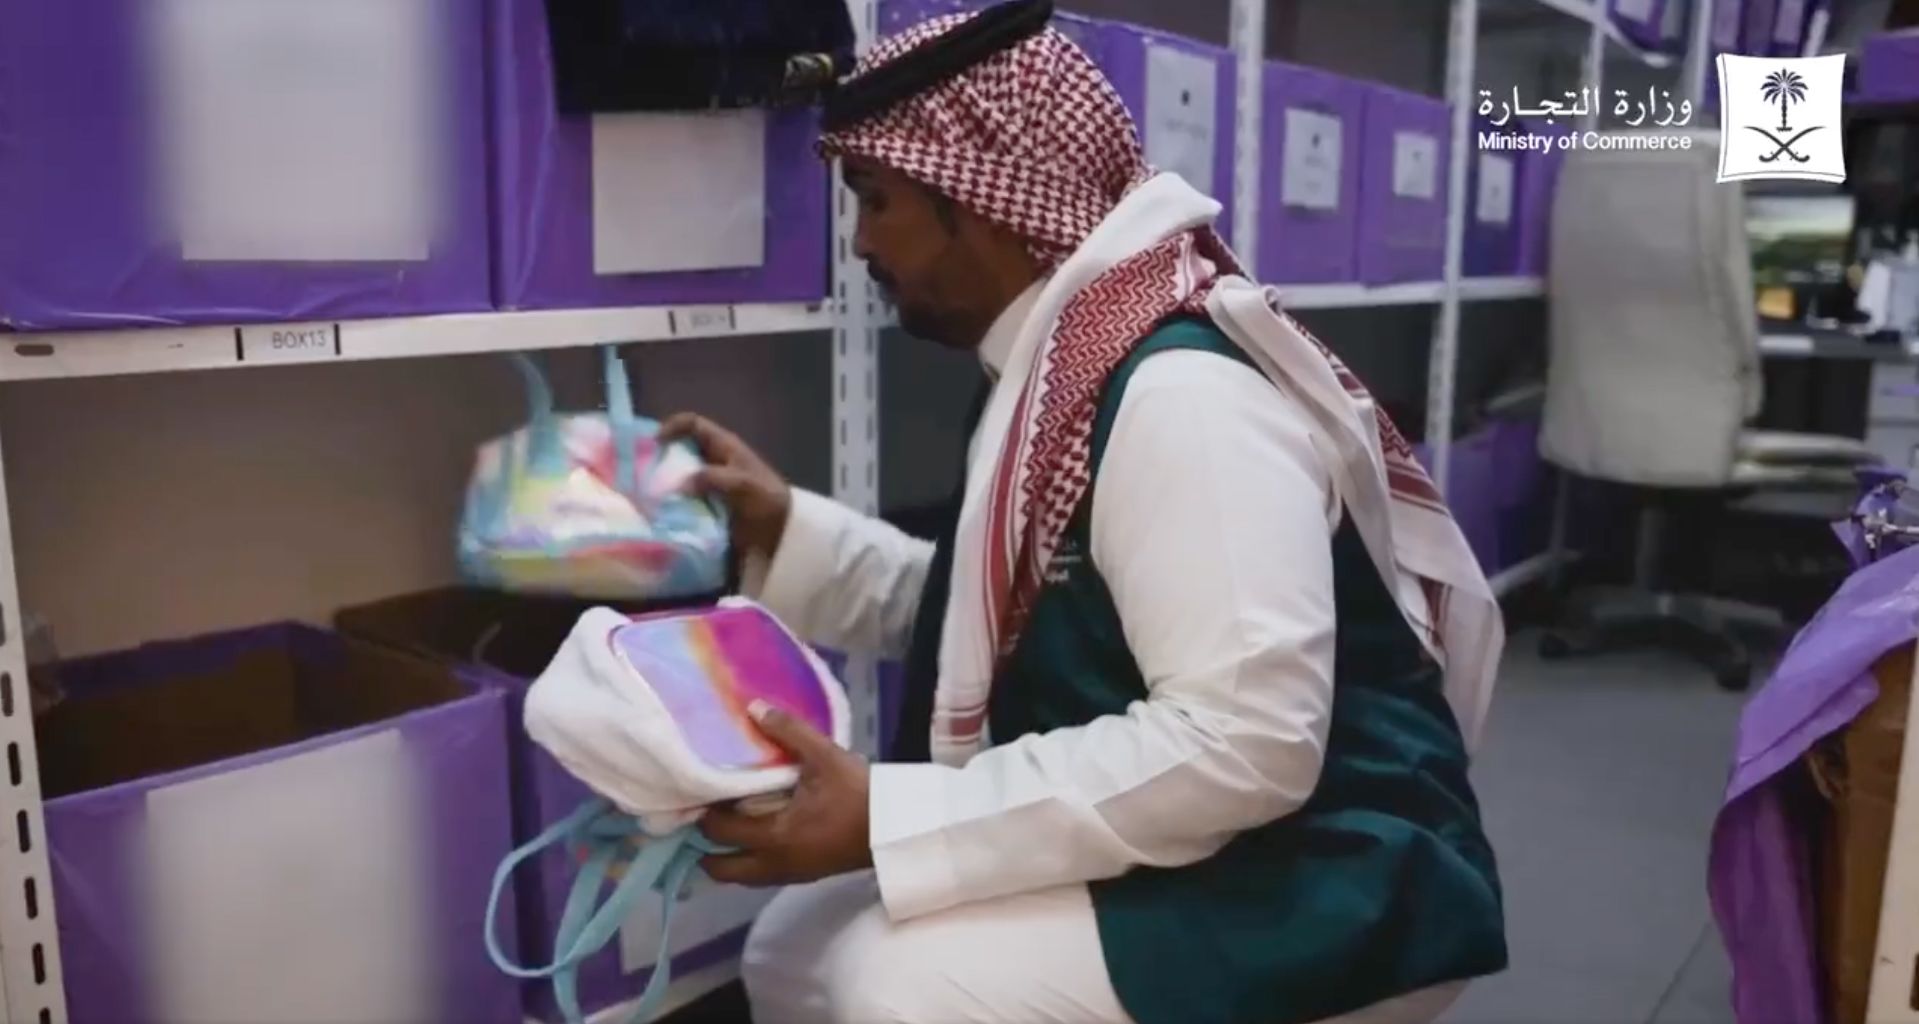 Arabie saoudite : les jouets arc-en-ciel interdits par le gouvernement -  Terrafemina